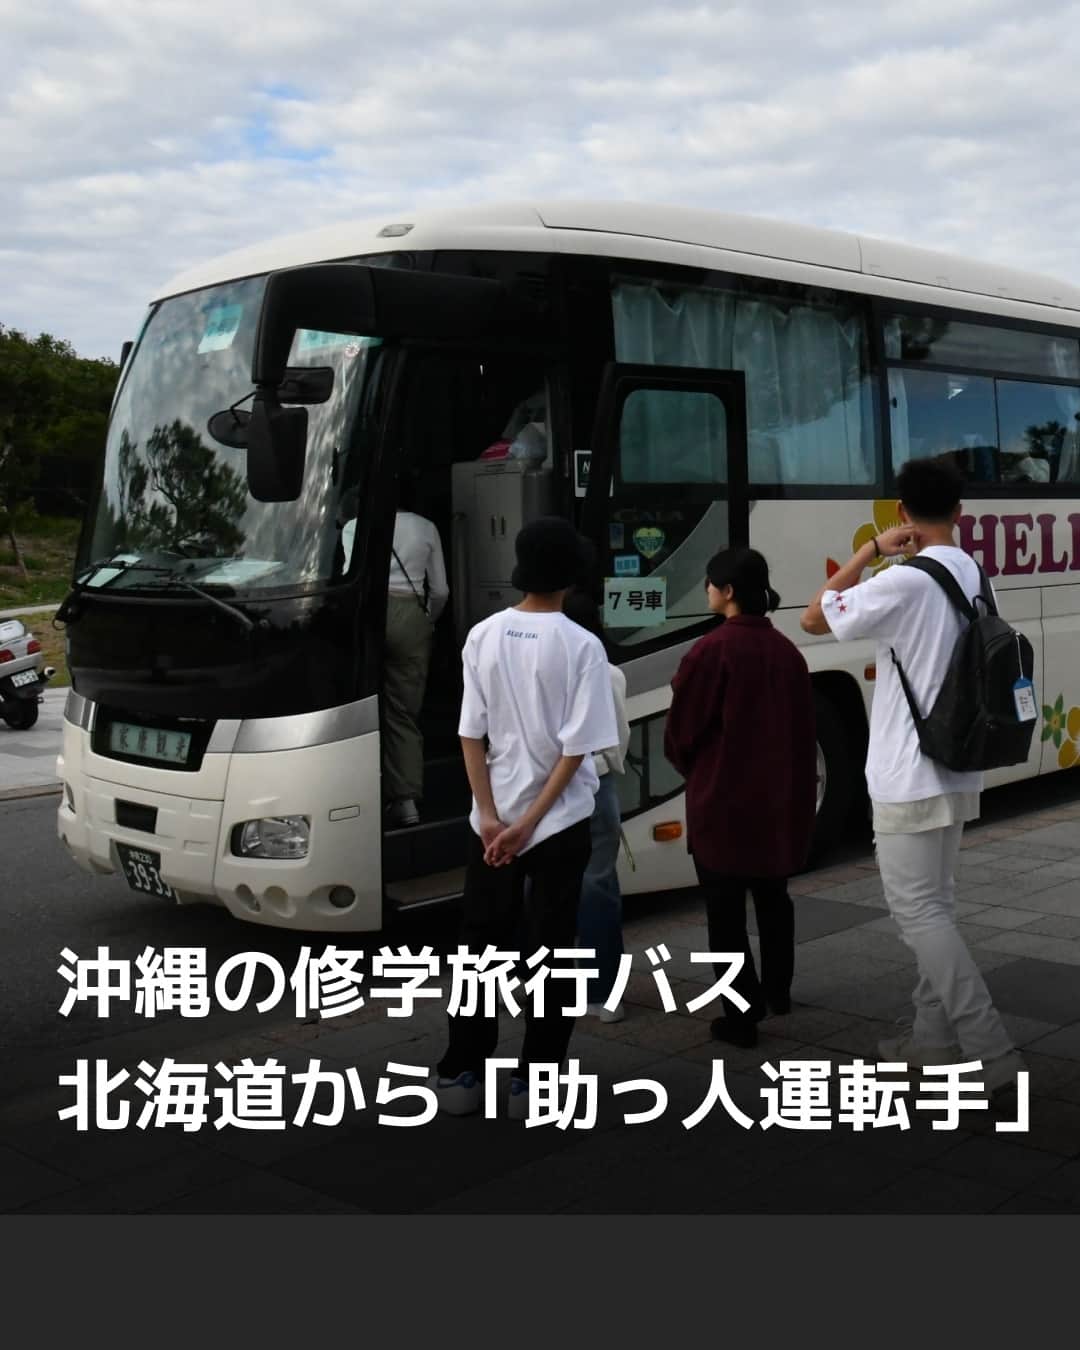 日本経済新聞社のインスタグラム：「バスの運転手不足が続く沖縄県で、北海道から「助っ人」を呼び込む動きが広がっています。10〜12月の修学旅行シーズンに車両の手配ができない懸念が表面化、県が派遣受け入れの補助に乗り出しました。貸し切りバスの需要は、個人客中心の夏場と秋で差が激しいのが沖縄観光の課題です。同シーズンを年明けに広げるなど、平準化を模索する動きも出てきました。⁠ ⁠ 詳細はプロフィールのlinkin.bio/nikkeiをタップ⁠ 投稿一覧からコンテンツをご覧になれます。→@Nikkei⁠ ⁠ #日経電子版 #沖縄 #修学旅行 #バス #運転手」